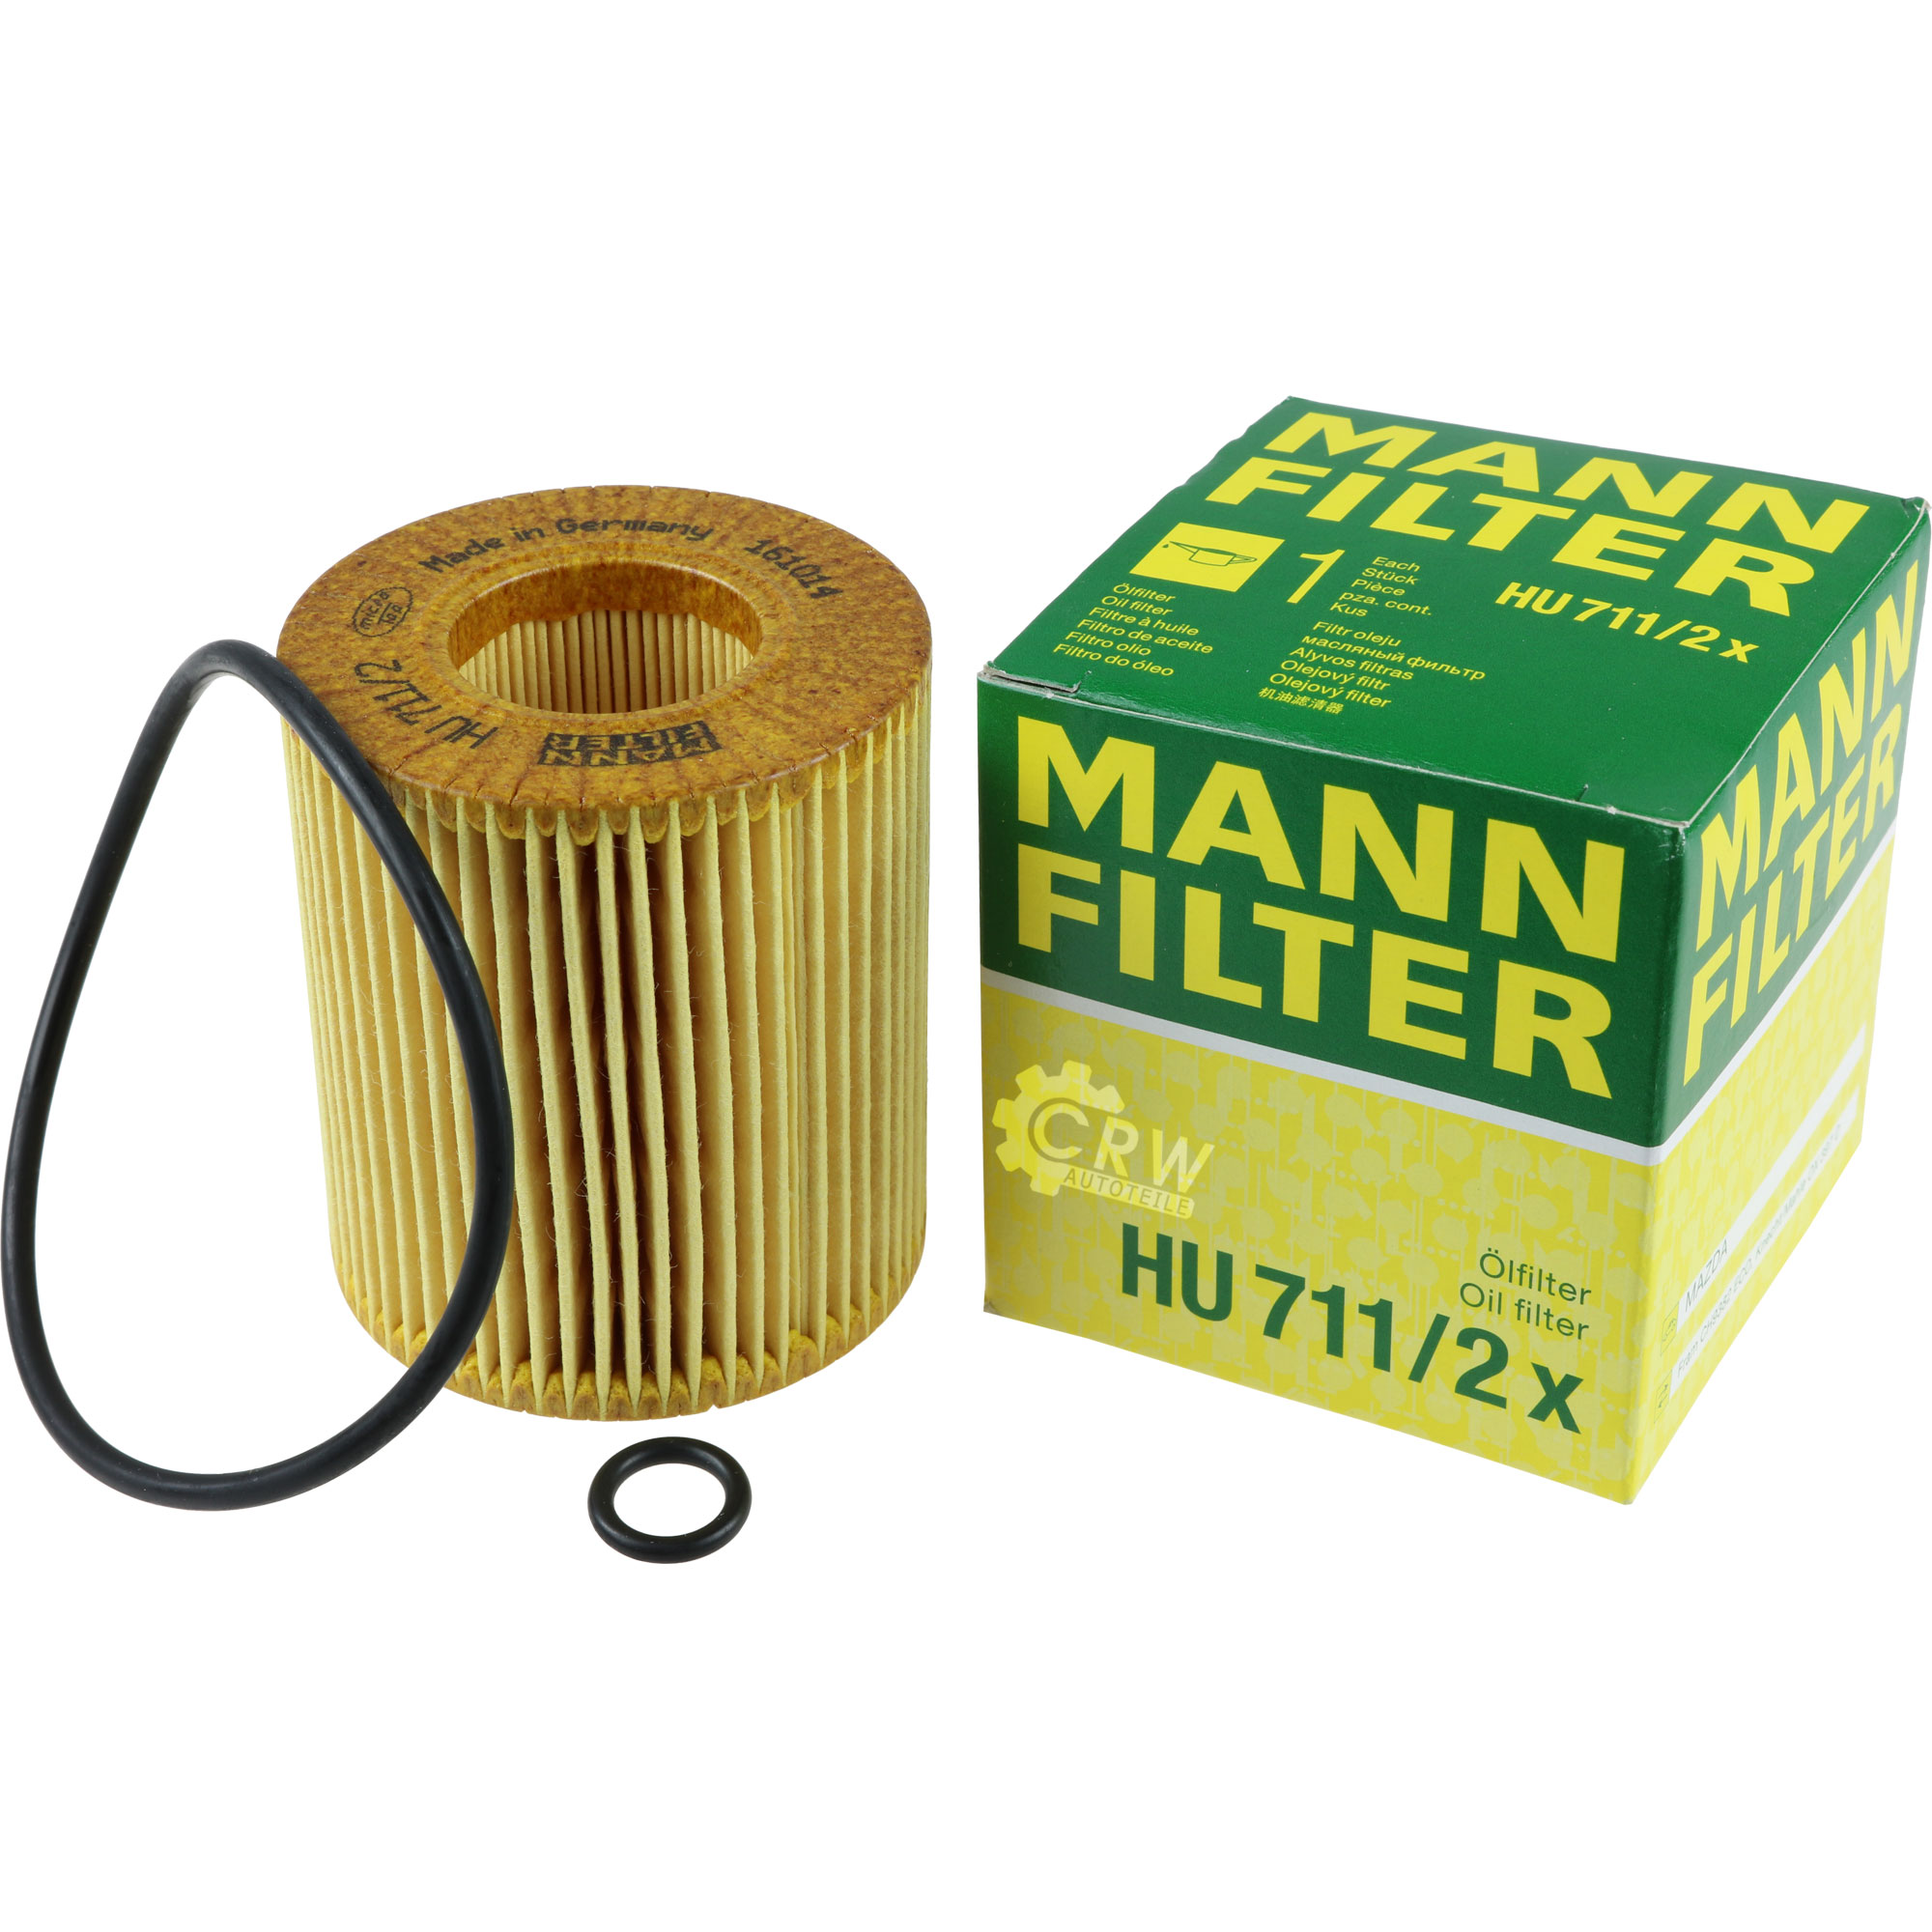 MANN-FILTER Ölfilter HU 711/2 x Oil Filter